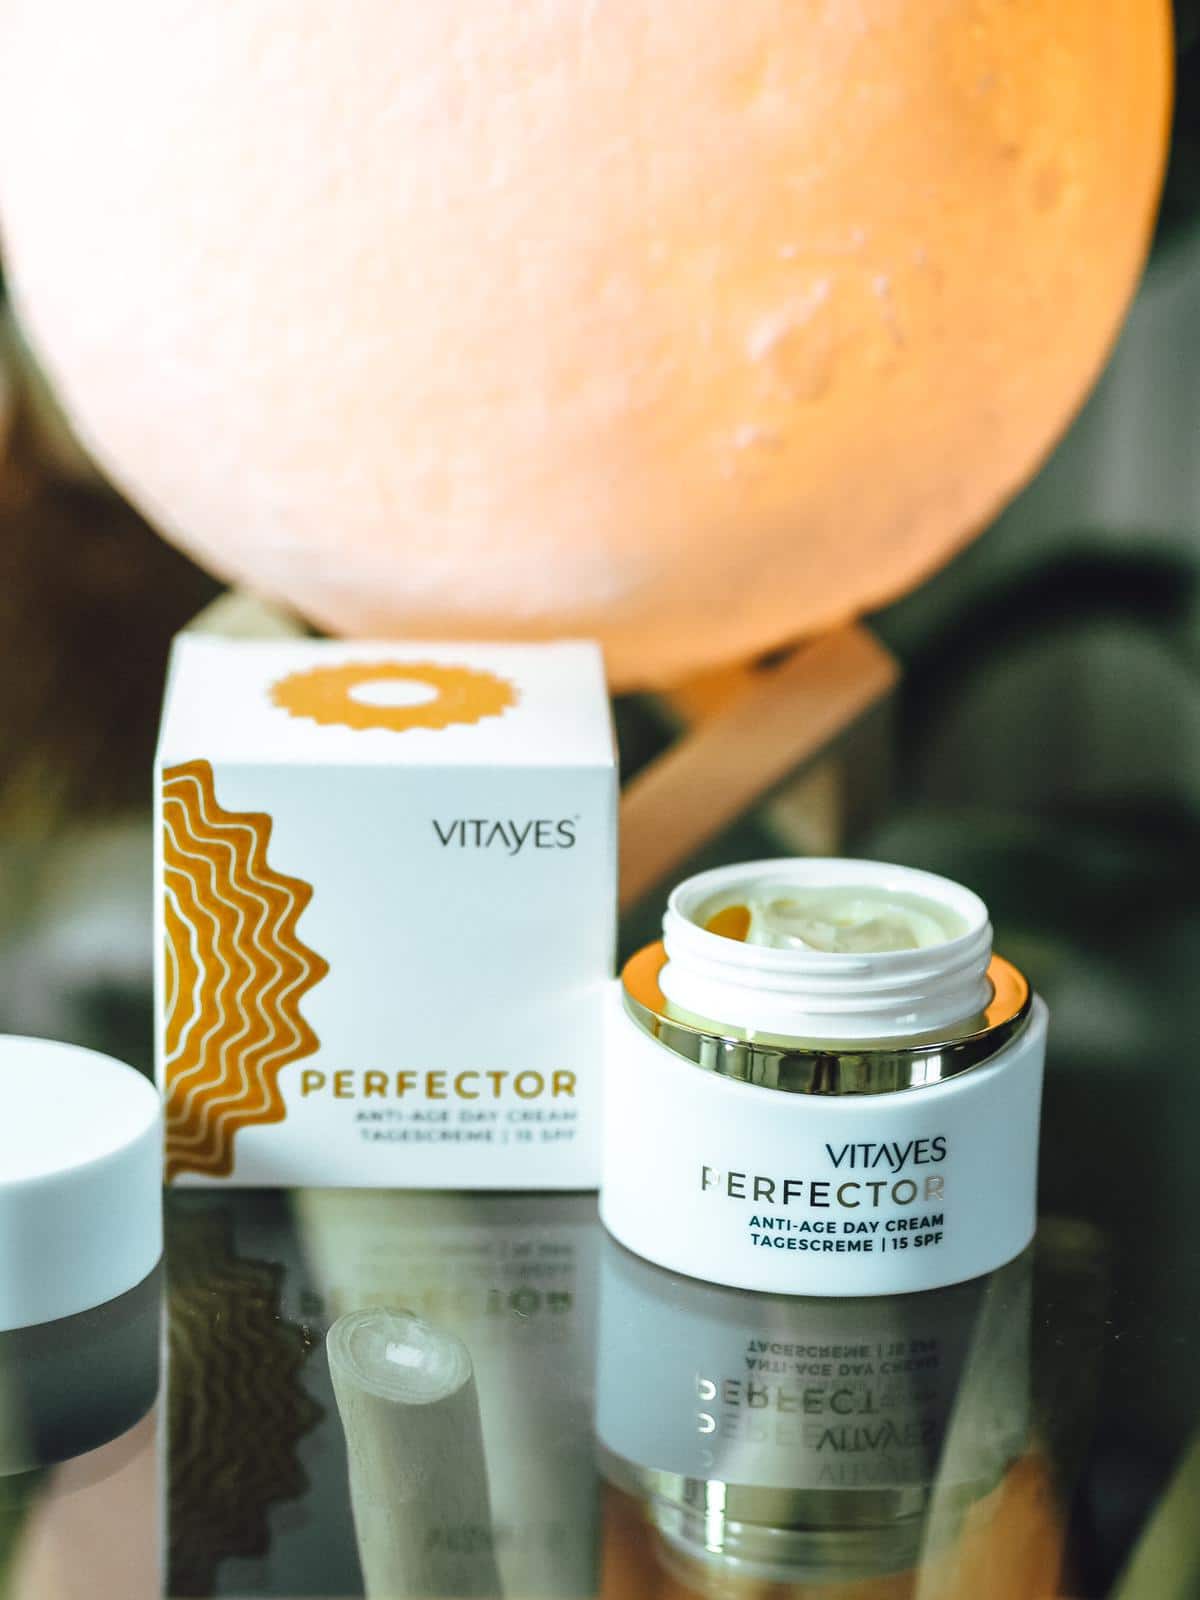 Perfector Hautpflegeserie von Vitayes - strahlende Haut mit der Tagescreme